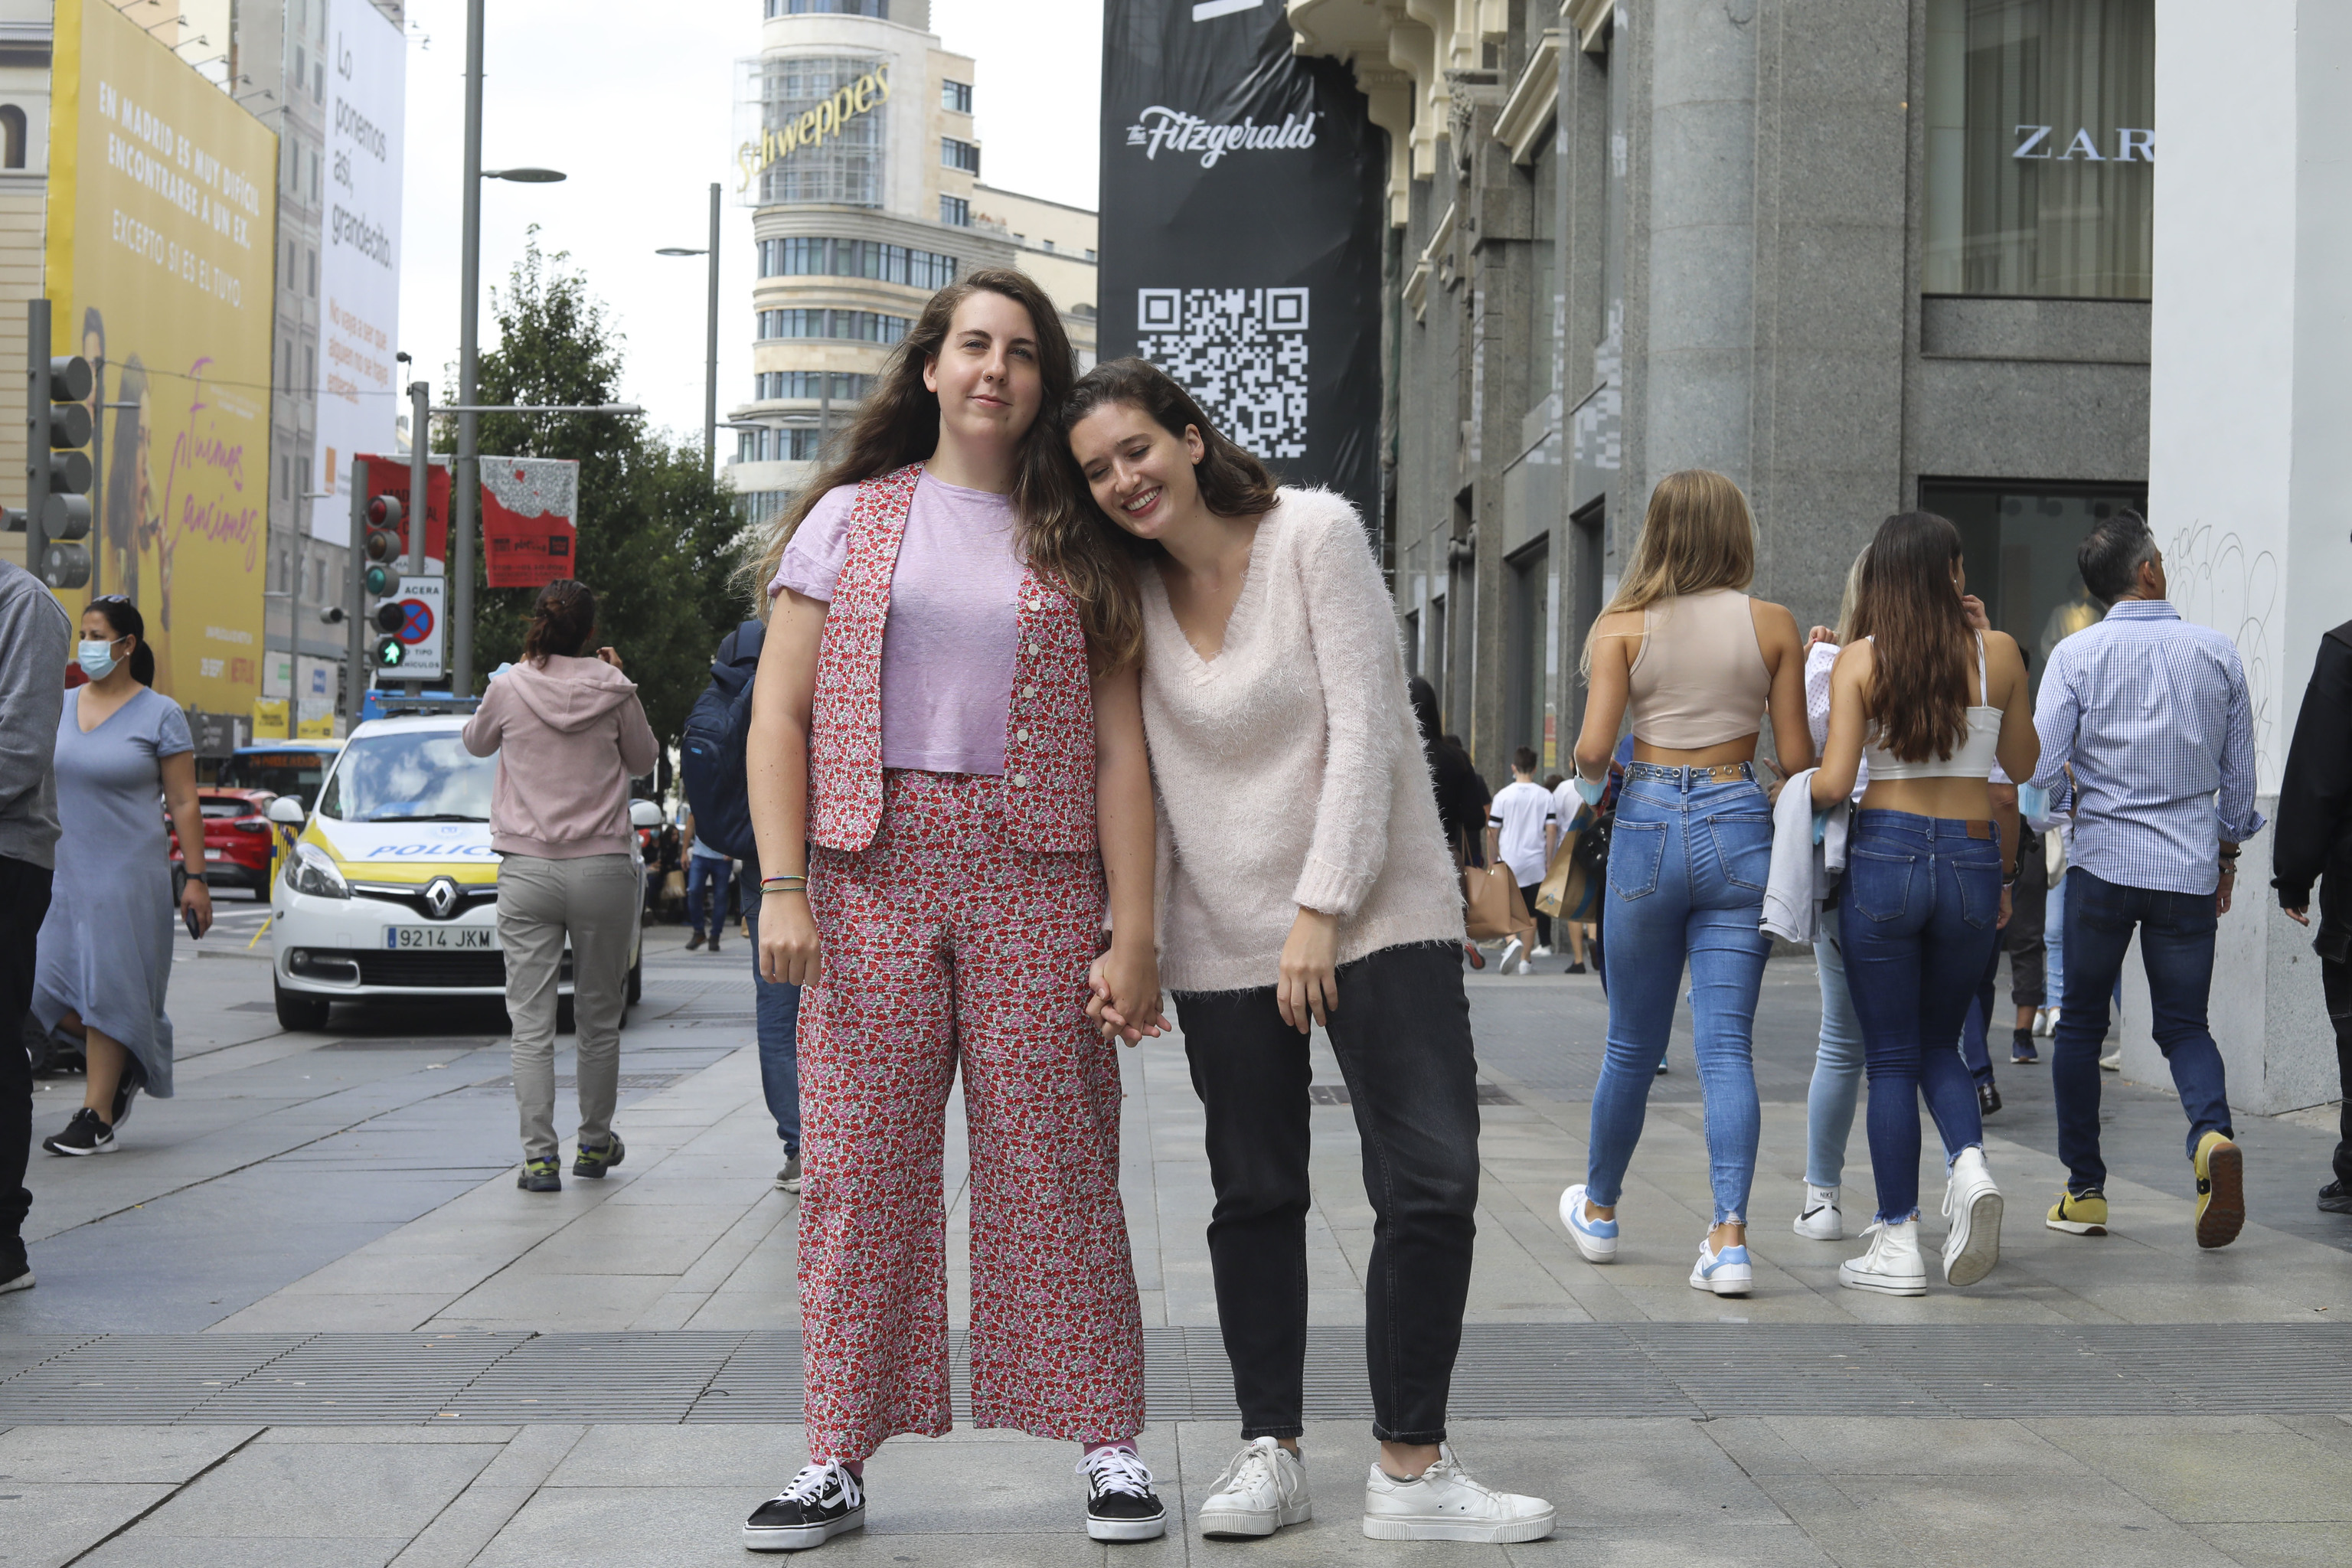 ictoria Martin y Carolina Iglesias, protagonistas del podcast 'Estirando el chicle'.